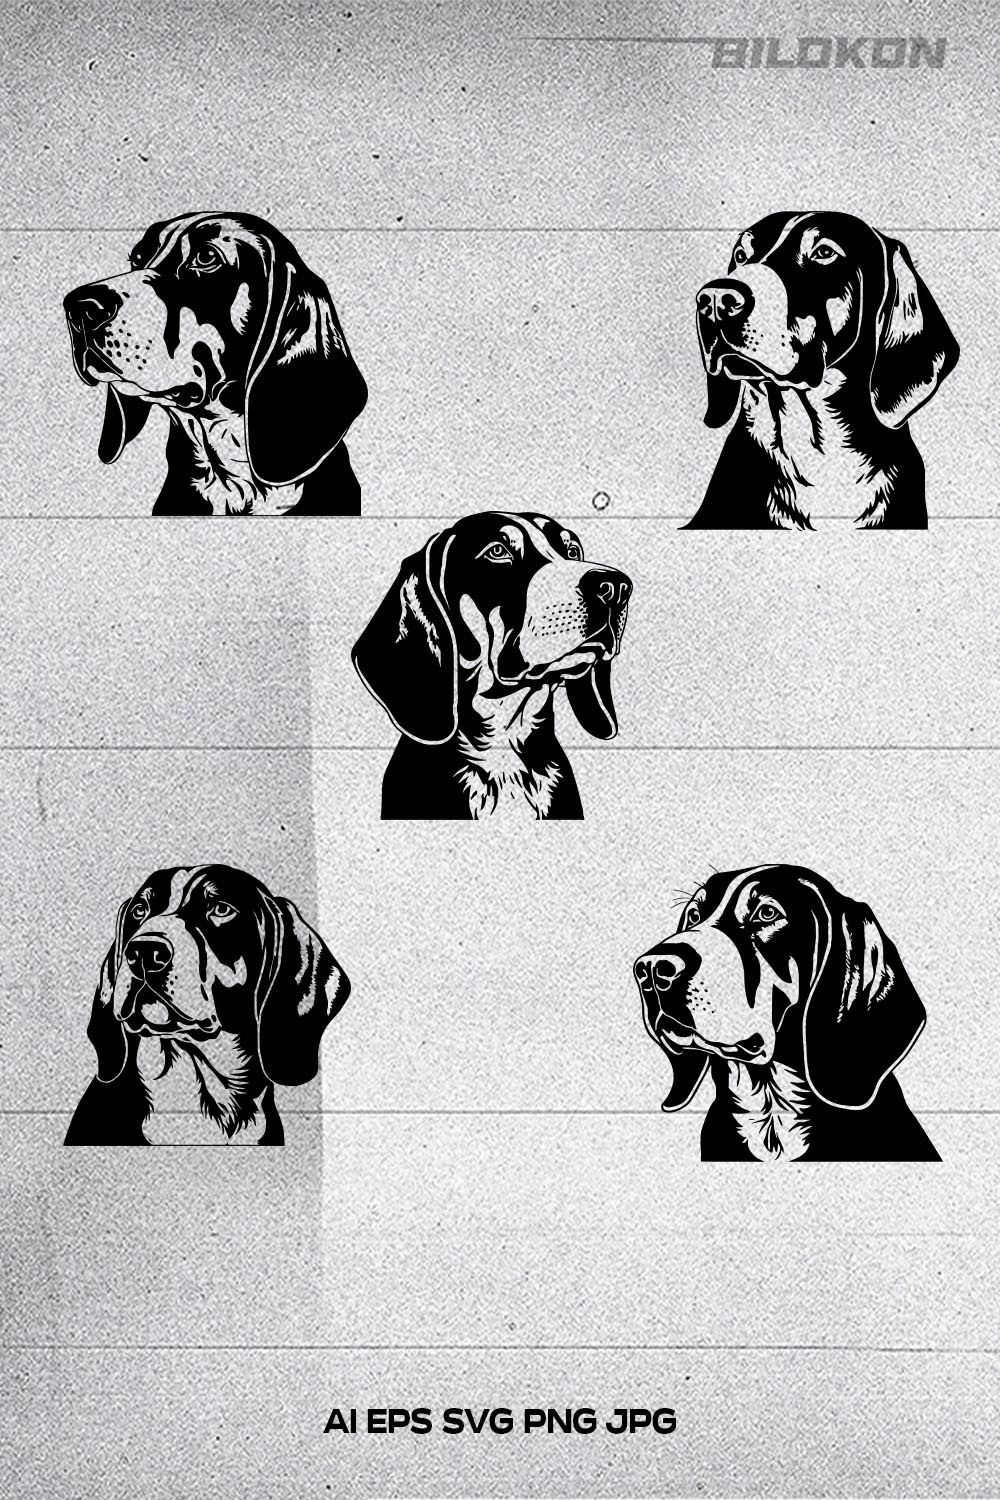 COONHOUND dog head, SVG, Vector, Illustration, SVG Bundle pinterest preview image.